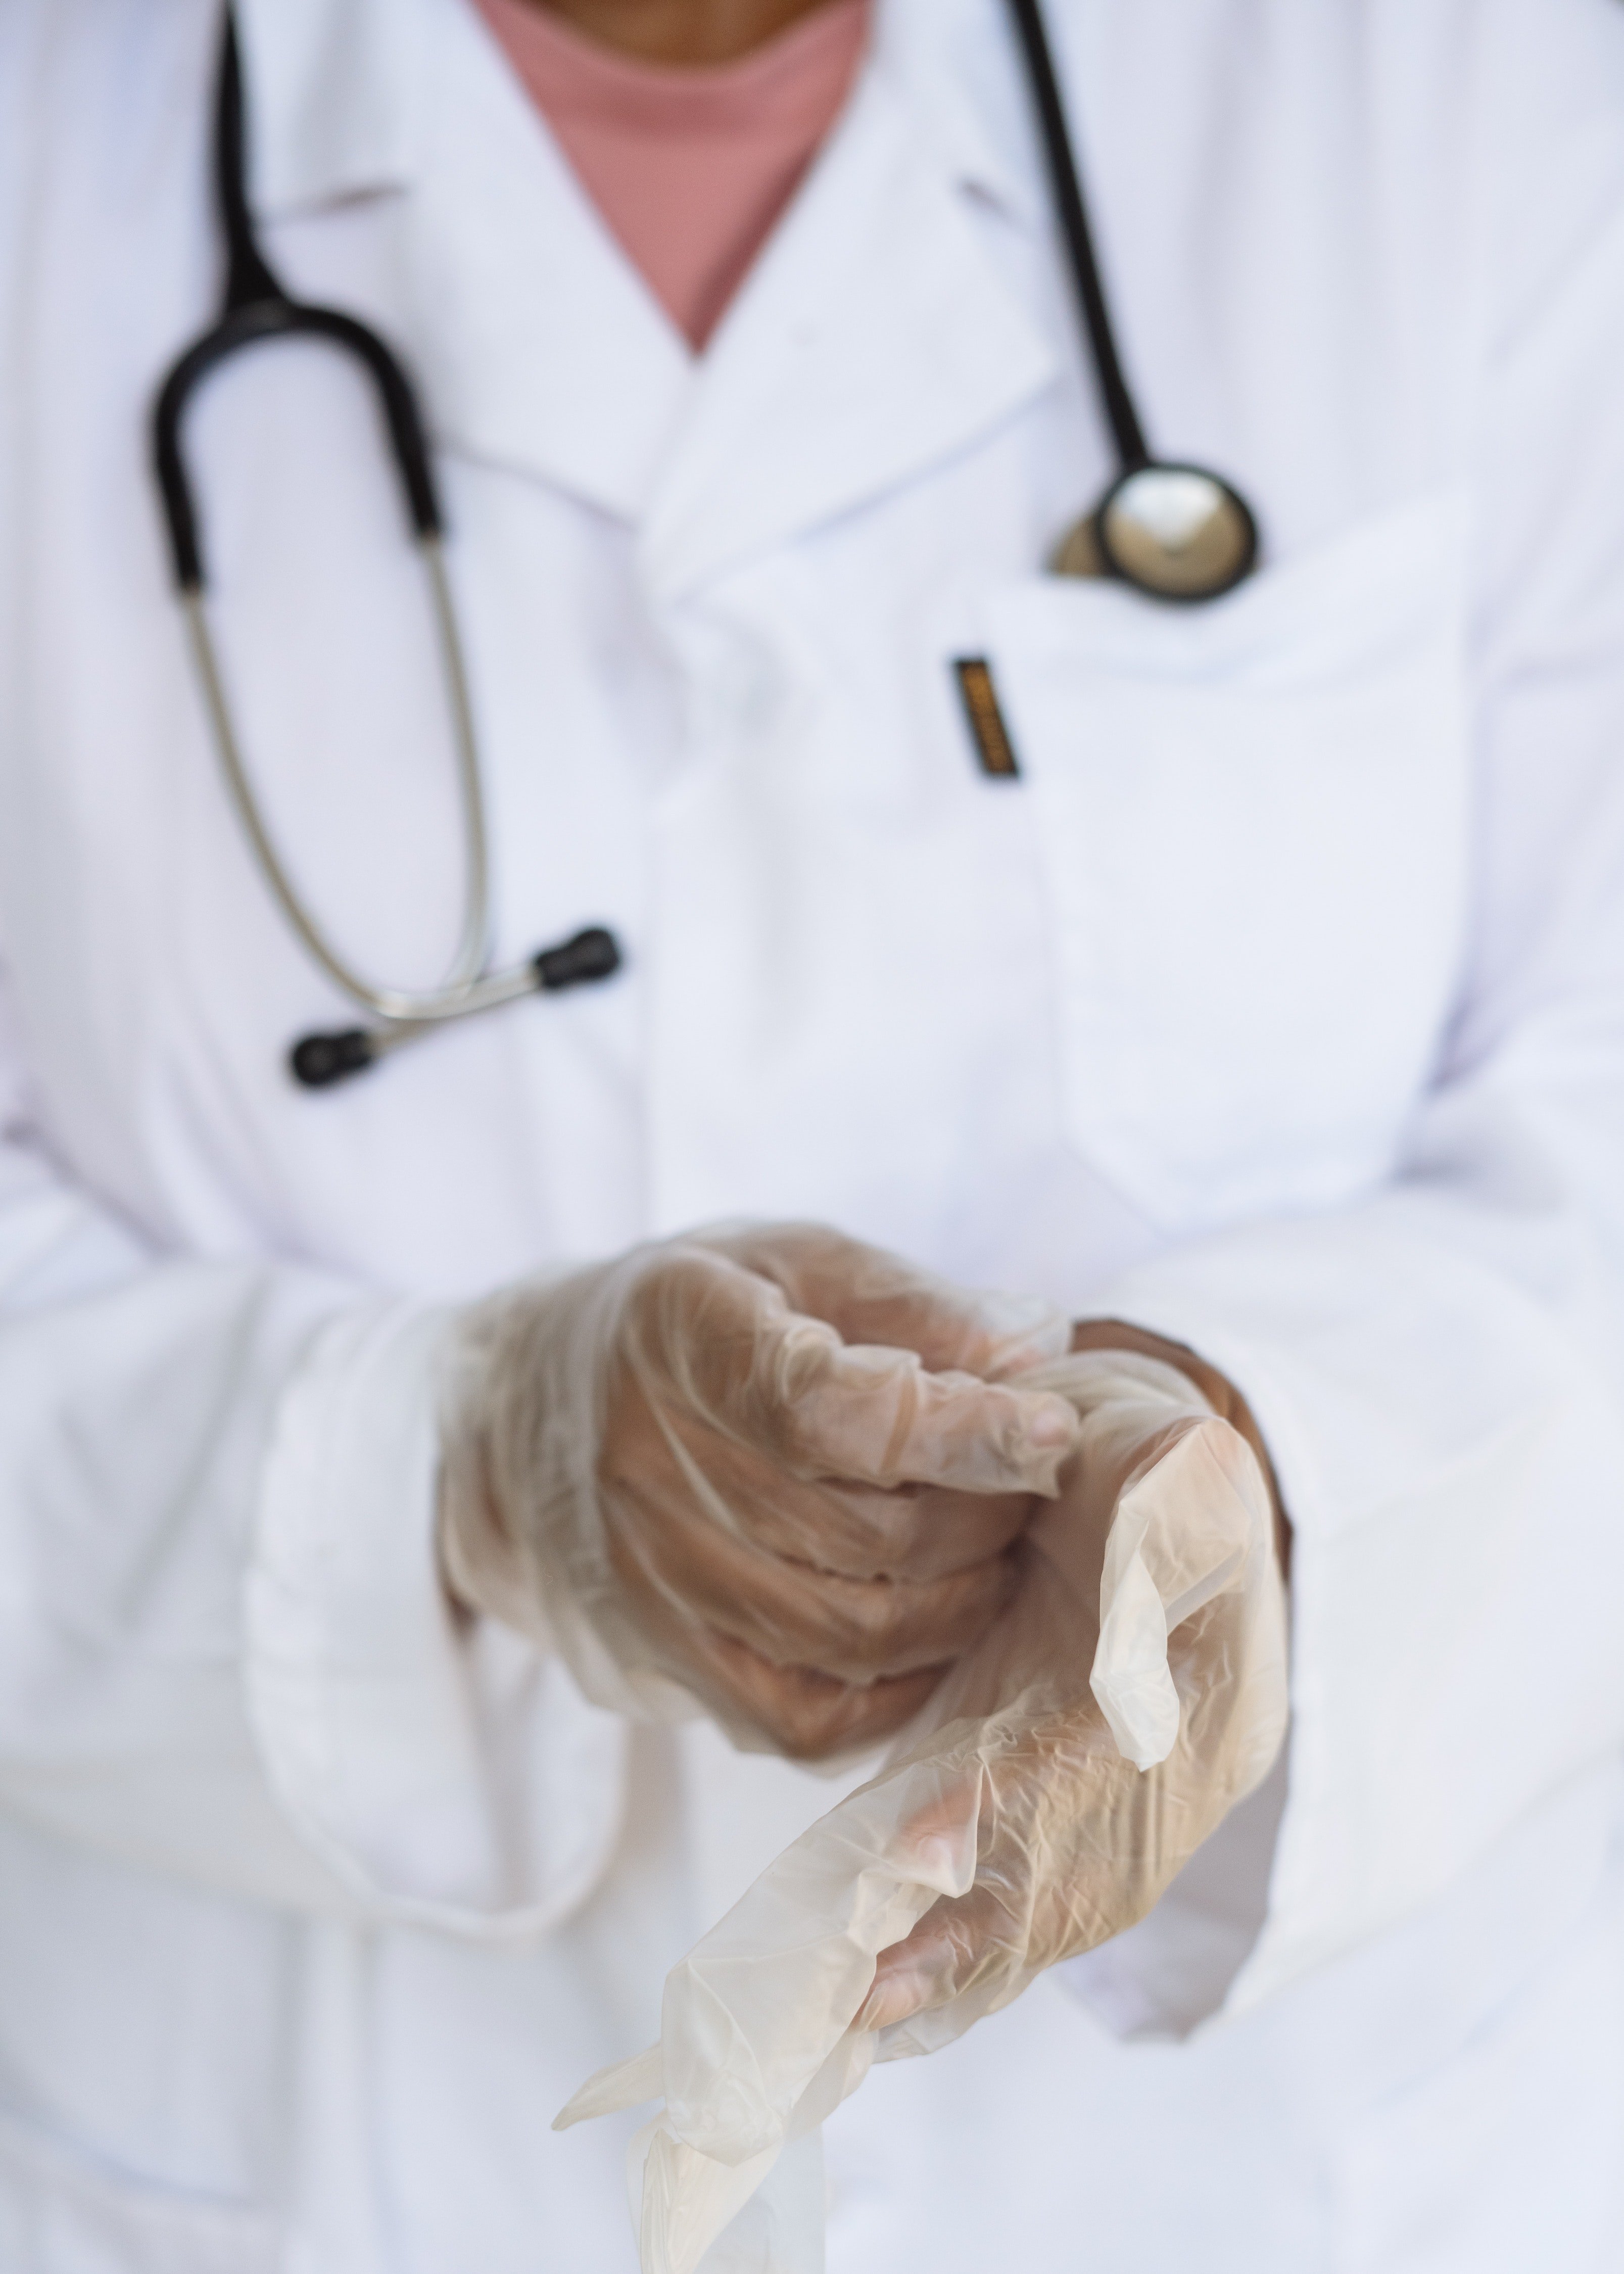 Médico colocándose unos guantes. | Foto: Pexels